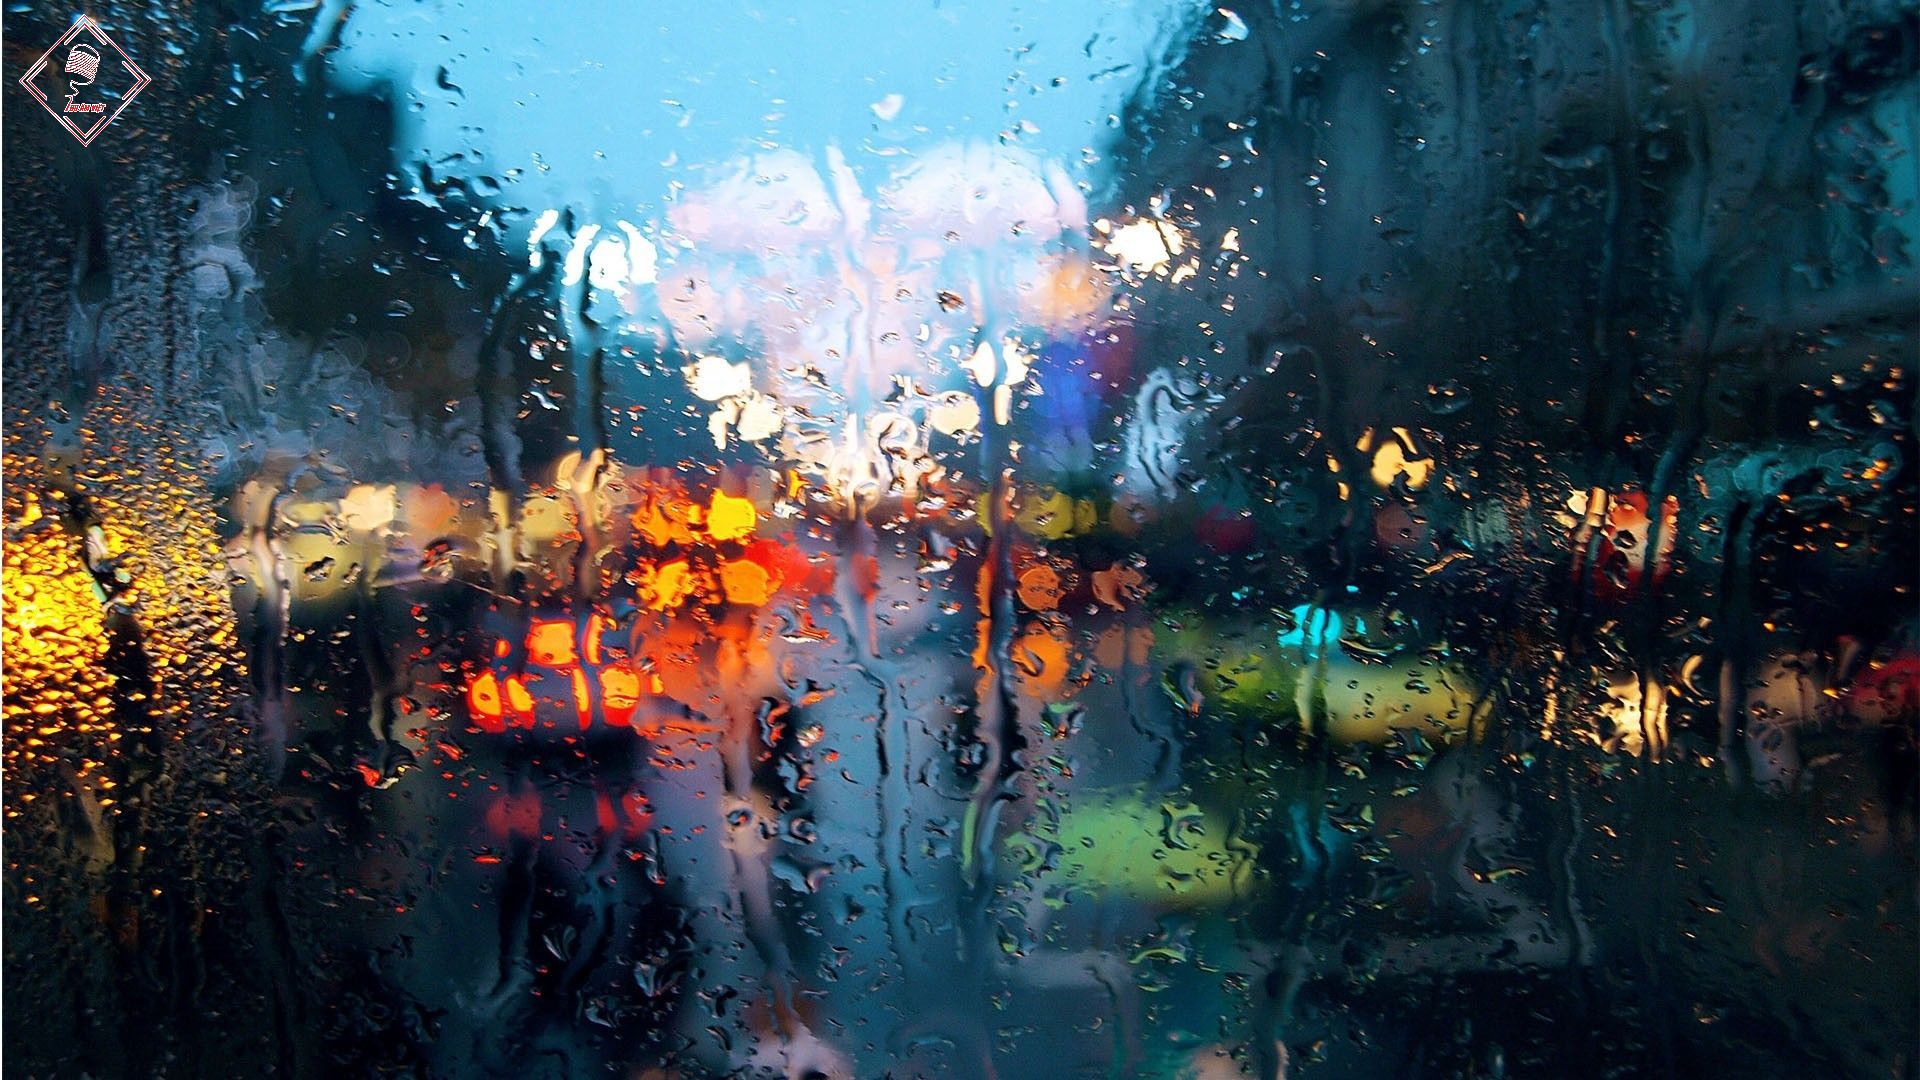 Bật một bài hát khi trời mưa về mưa sẽ khiến lòng người dịu xuống